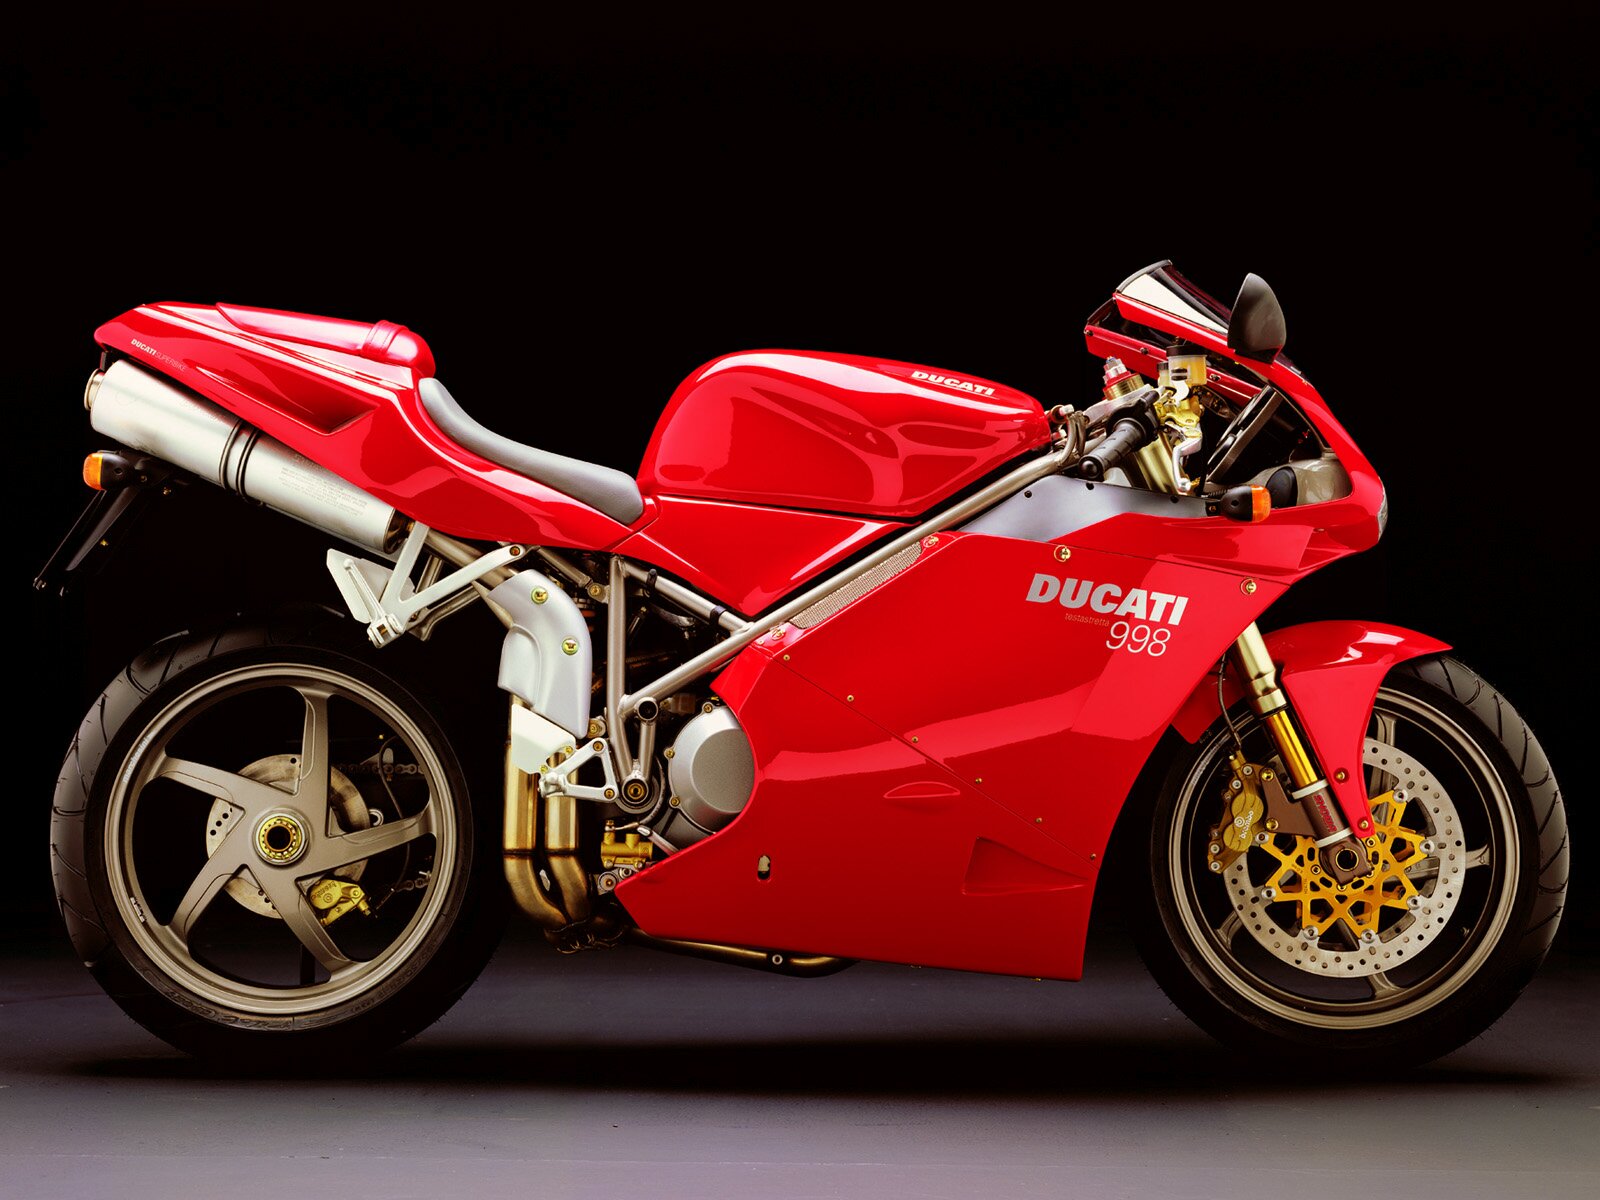 Ducati_998_1600x1200.jpg